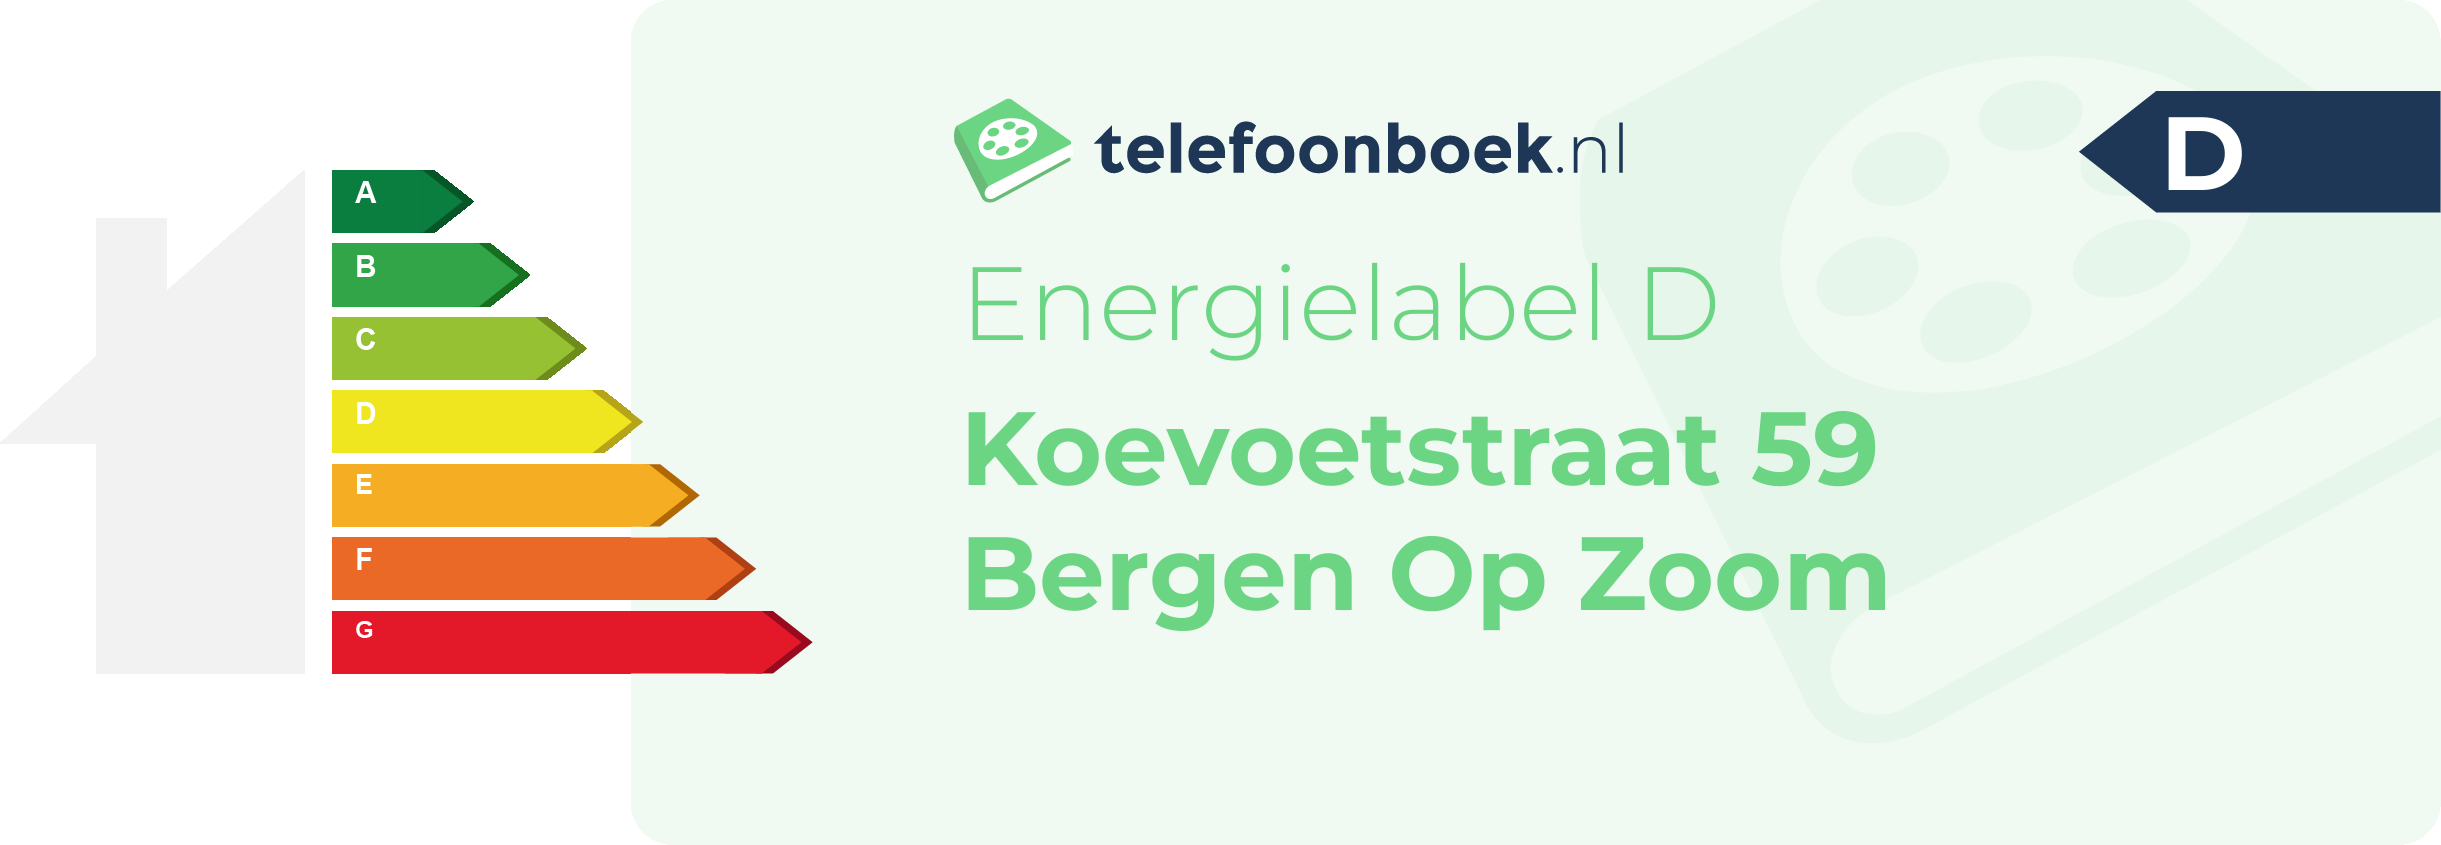 Energielabel Koevoetstraat 59 Bergen Op Zoom